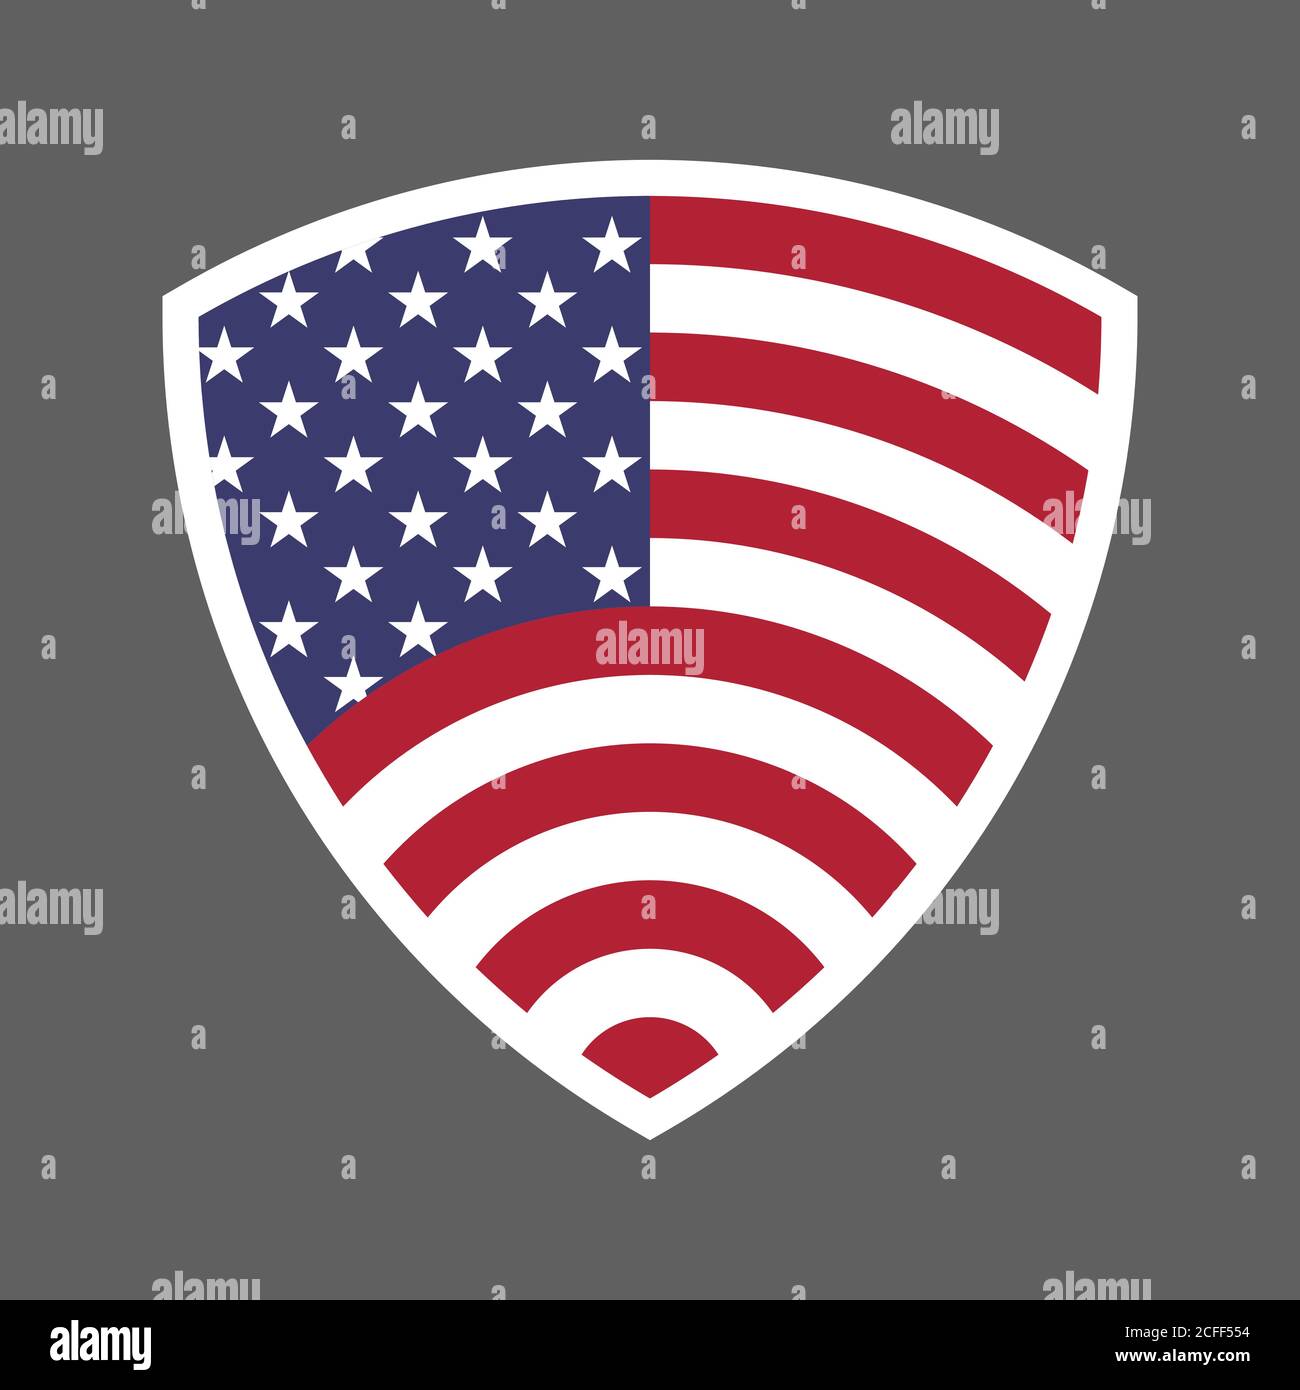 Etats-Unis d'Amérique Etats-Unis drapeau Shield icône logo illustration vectorielle. Jour de l'indépendance. 4 juillet. Élection présidentielle Illustration de Vecteur